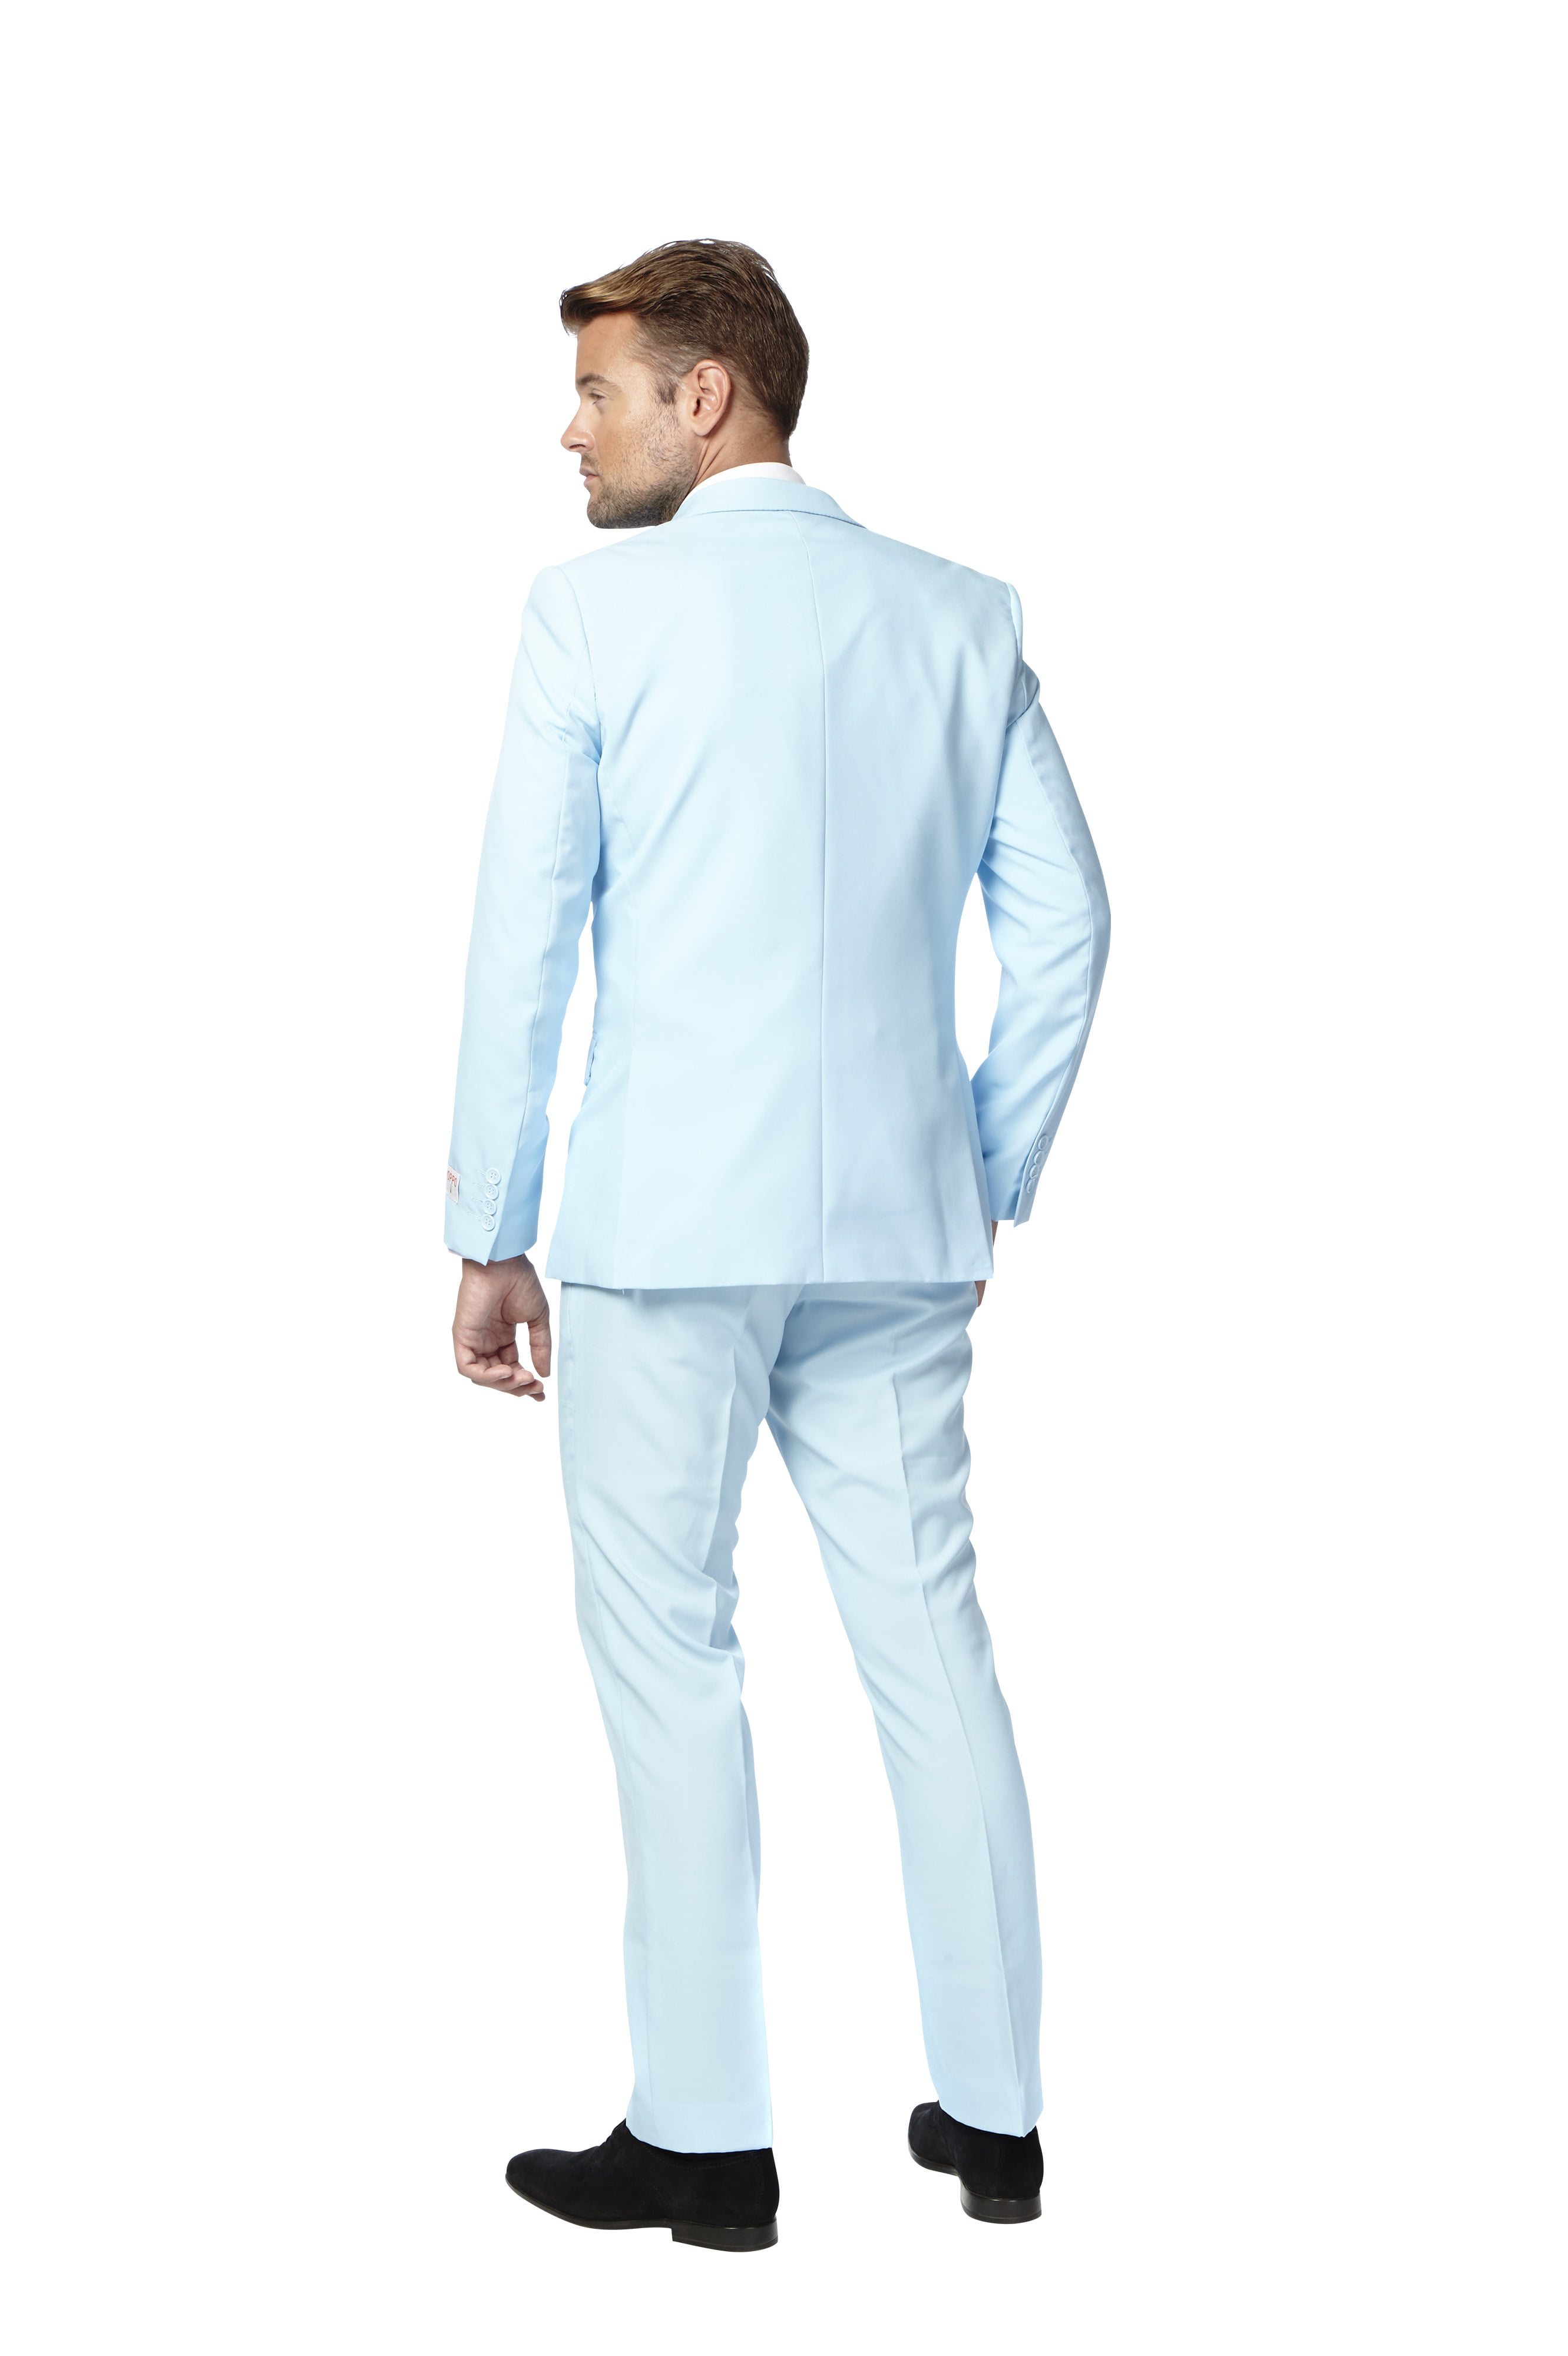 OppoSuits Men's Cool Blue Solid Color Suit - Walmart.com